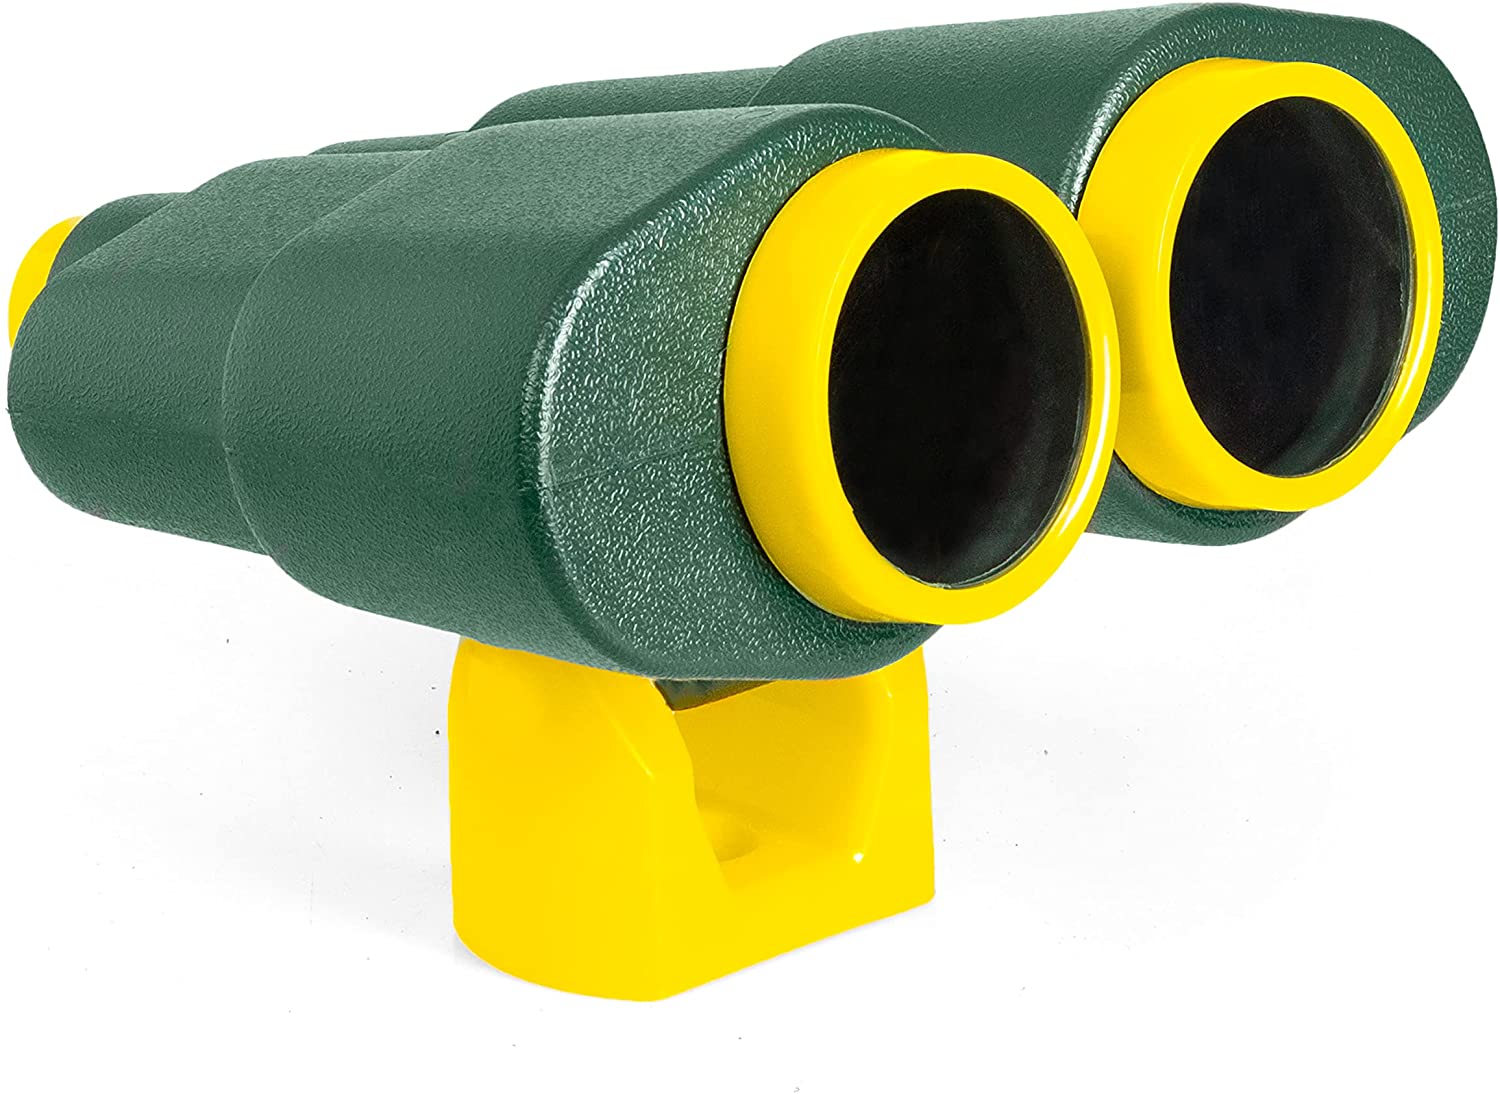 Playground Binoculars for Kids - Jungle Gym Swing Set Equipment Accessory